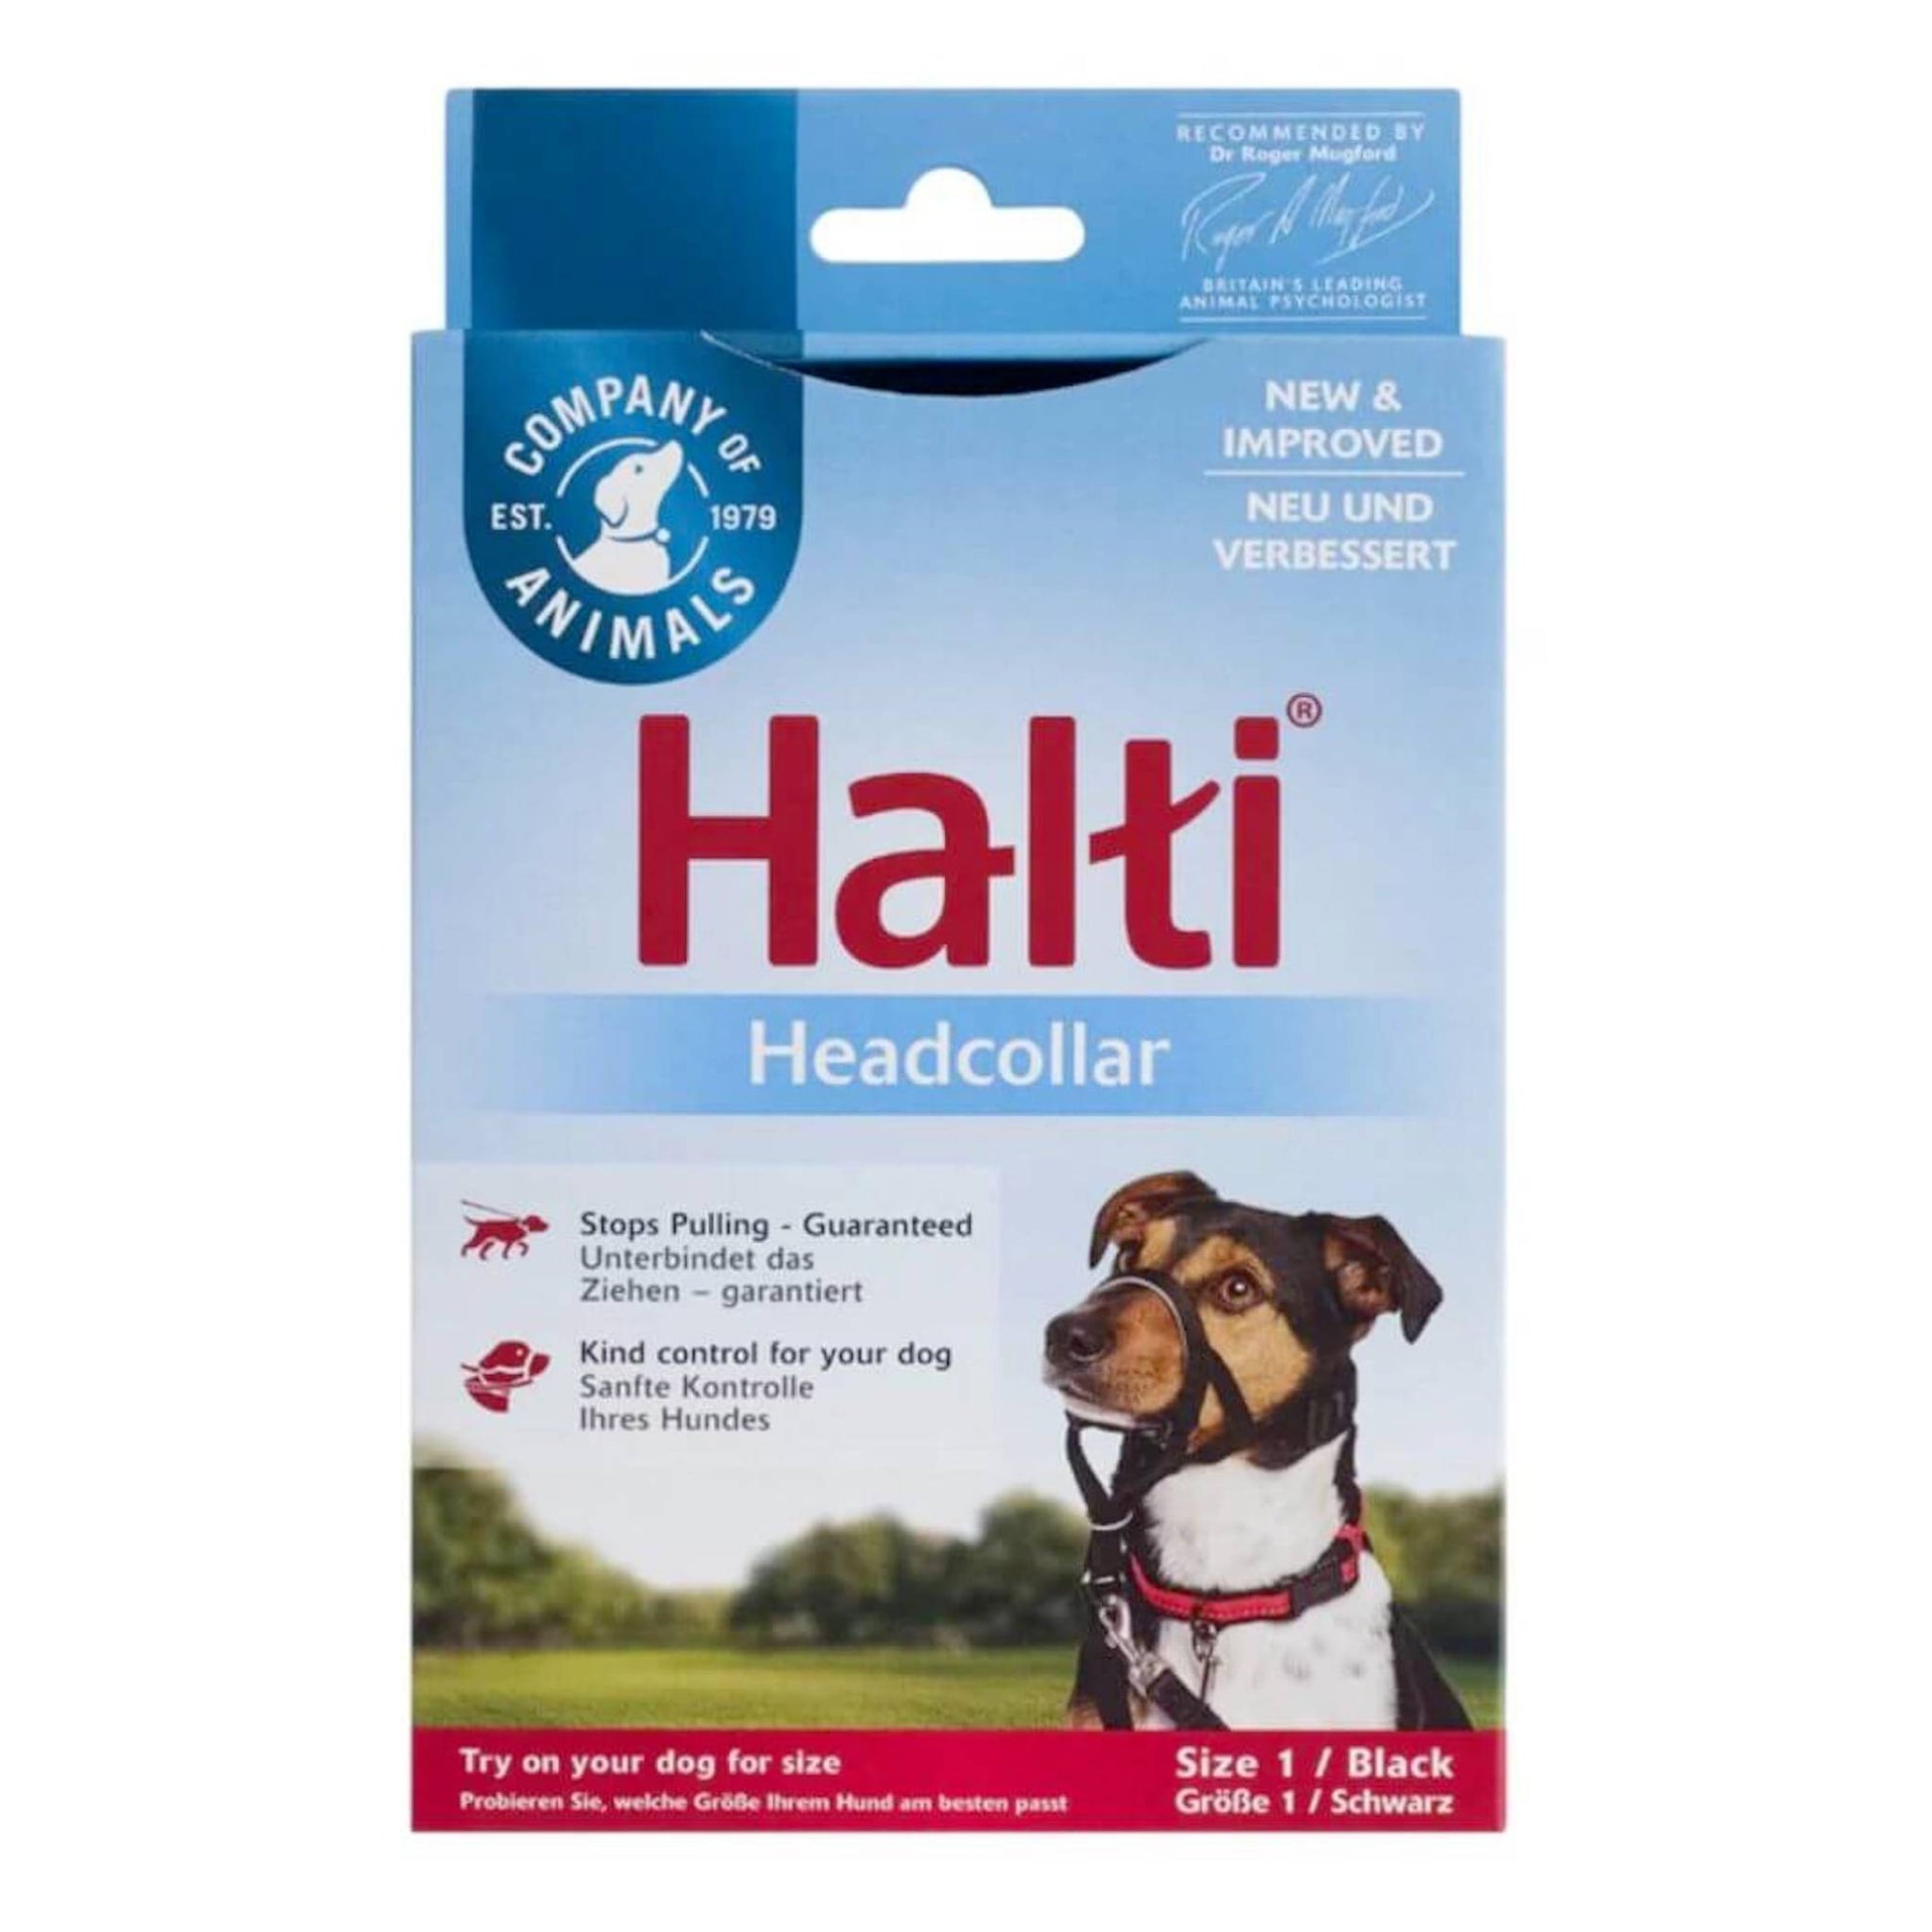 Halti headcollar for dogs size 1